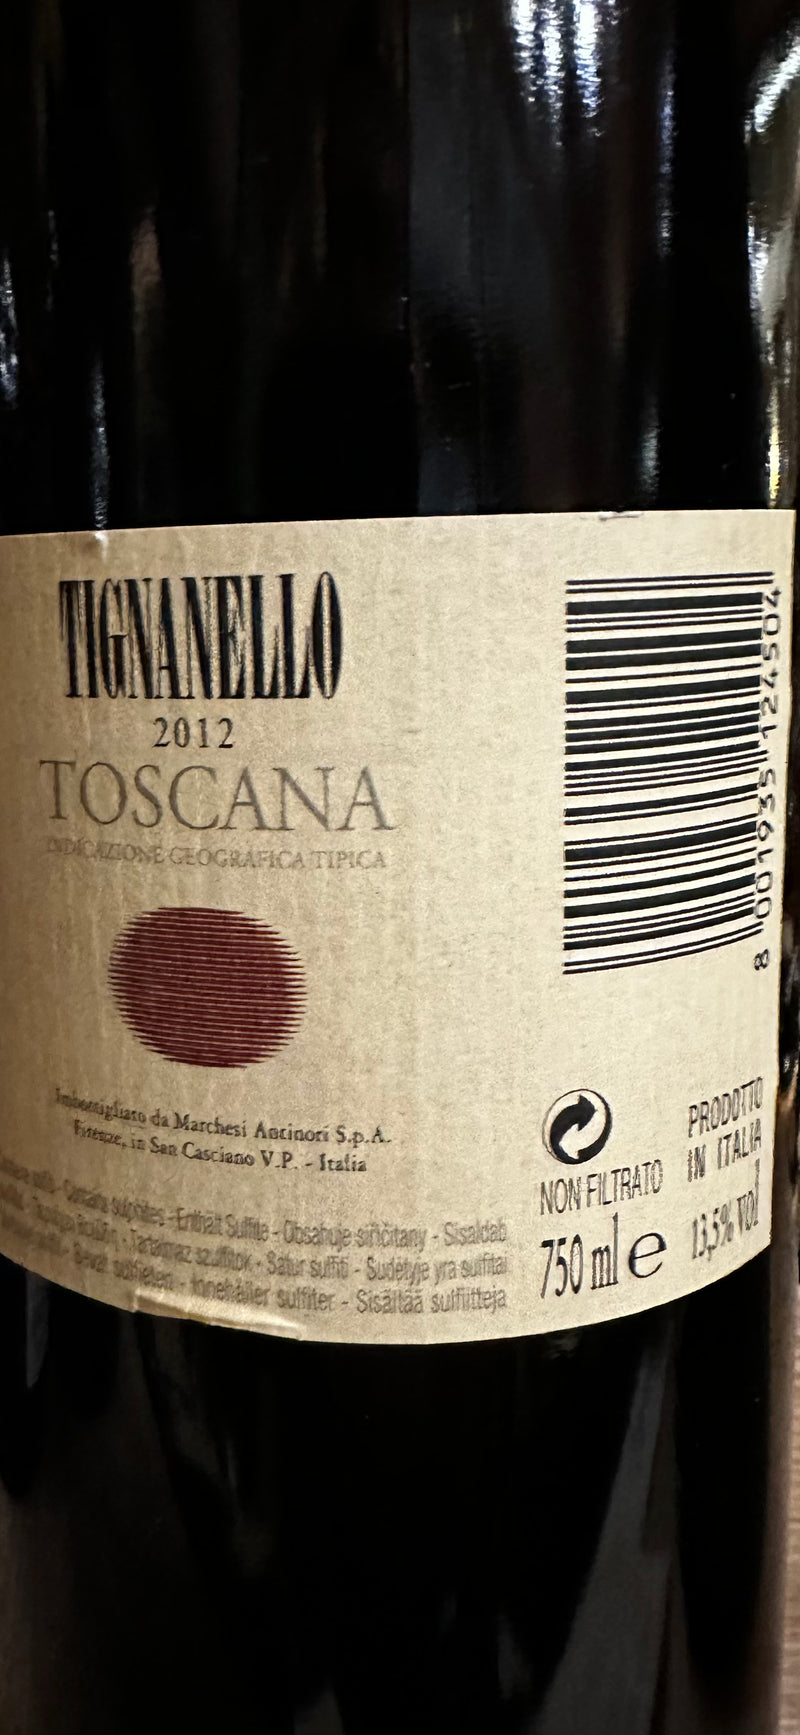 Toscana Rosso IGT “Tignanello” 2012 - Tenuta Tignanello, Antinori